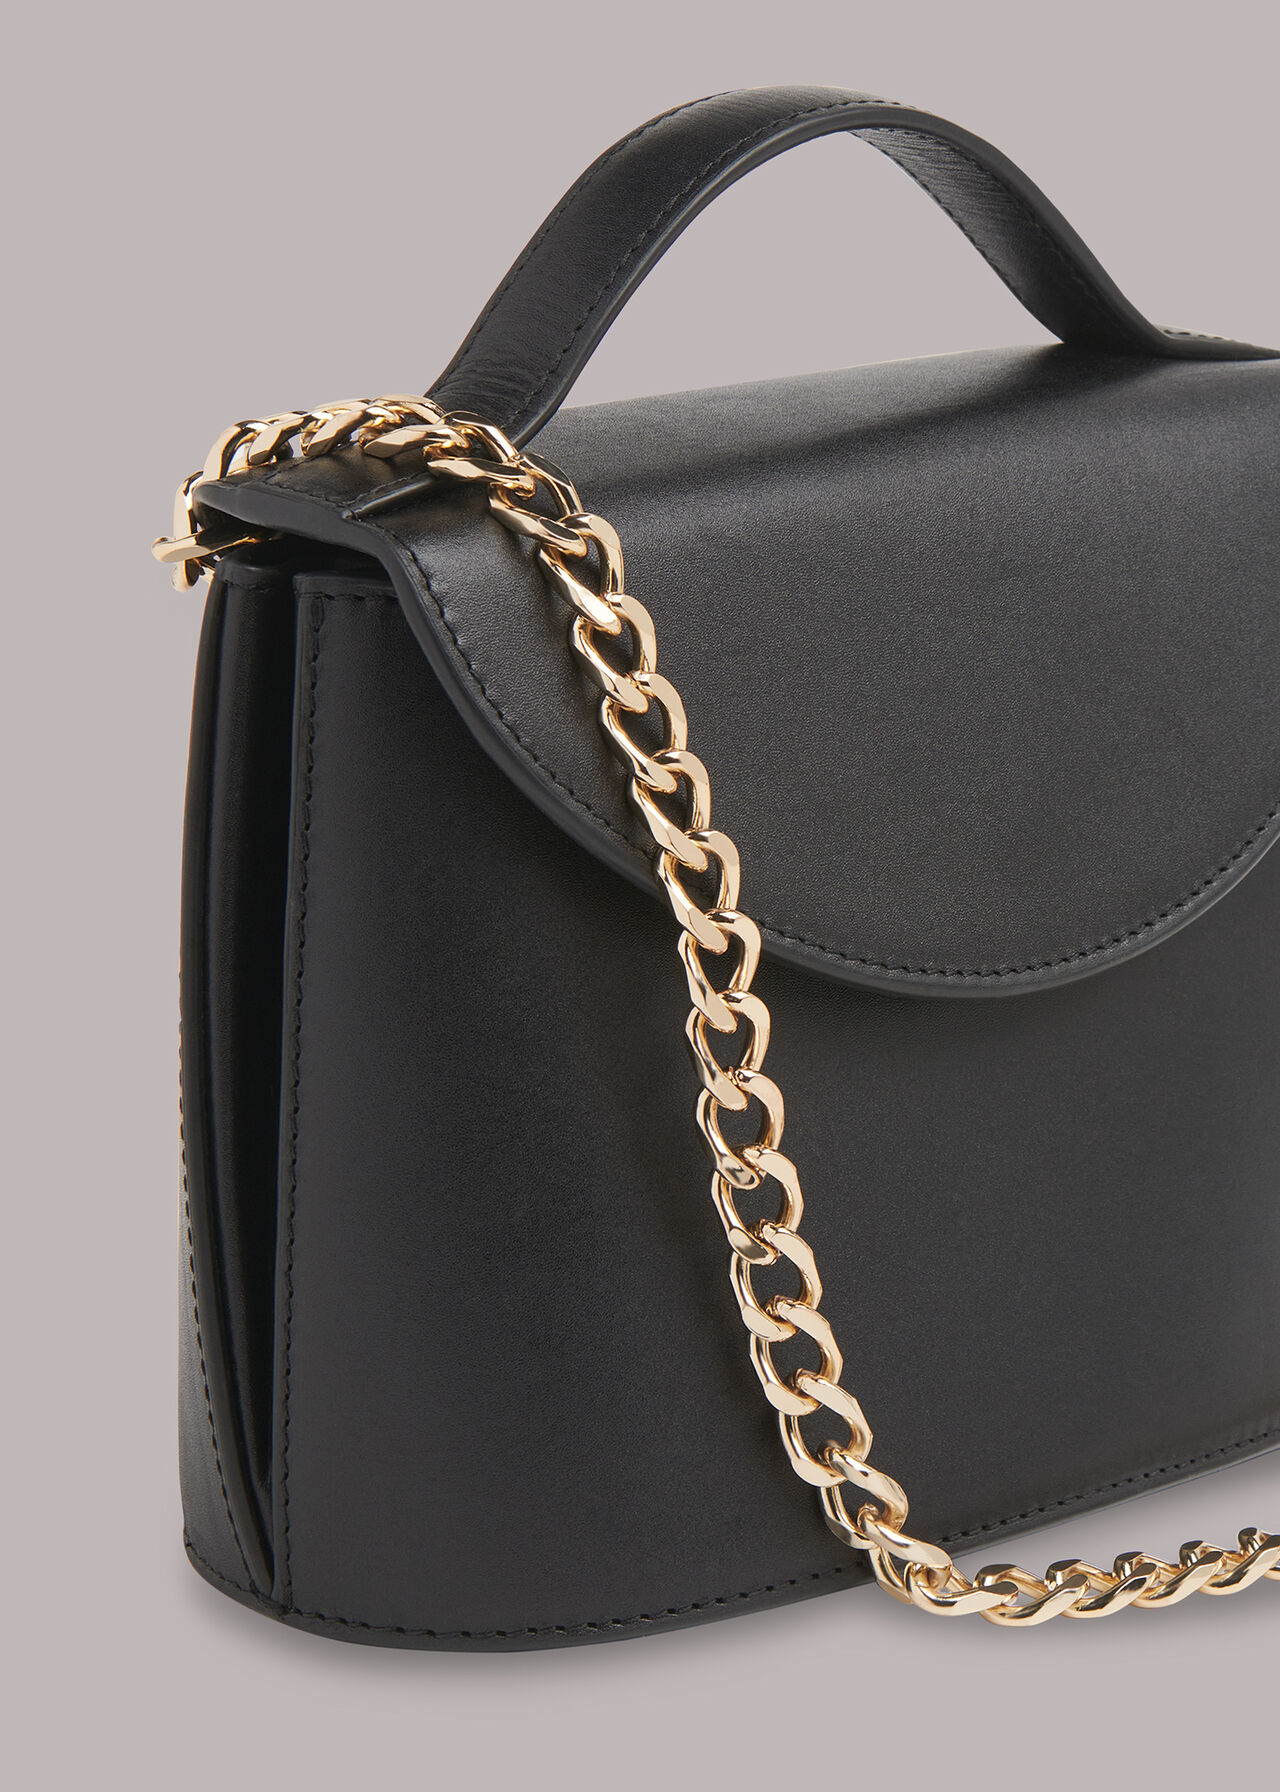 Eames Chain Bag